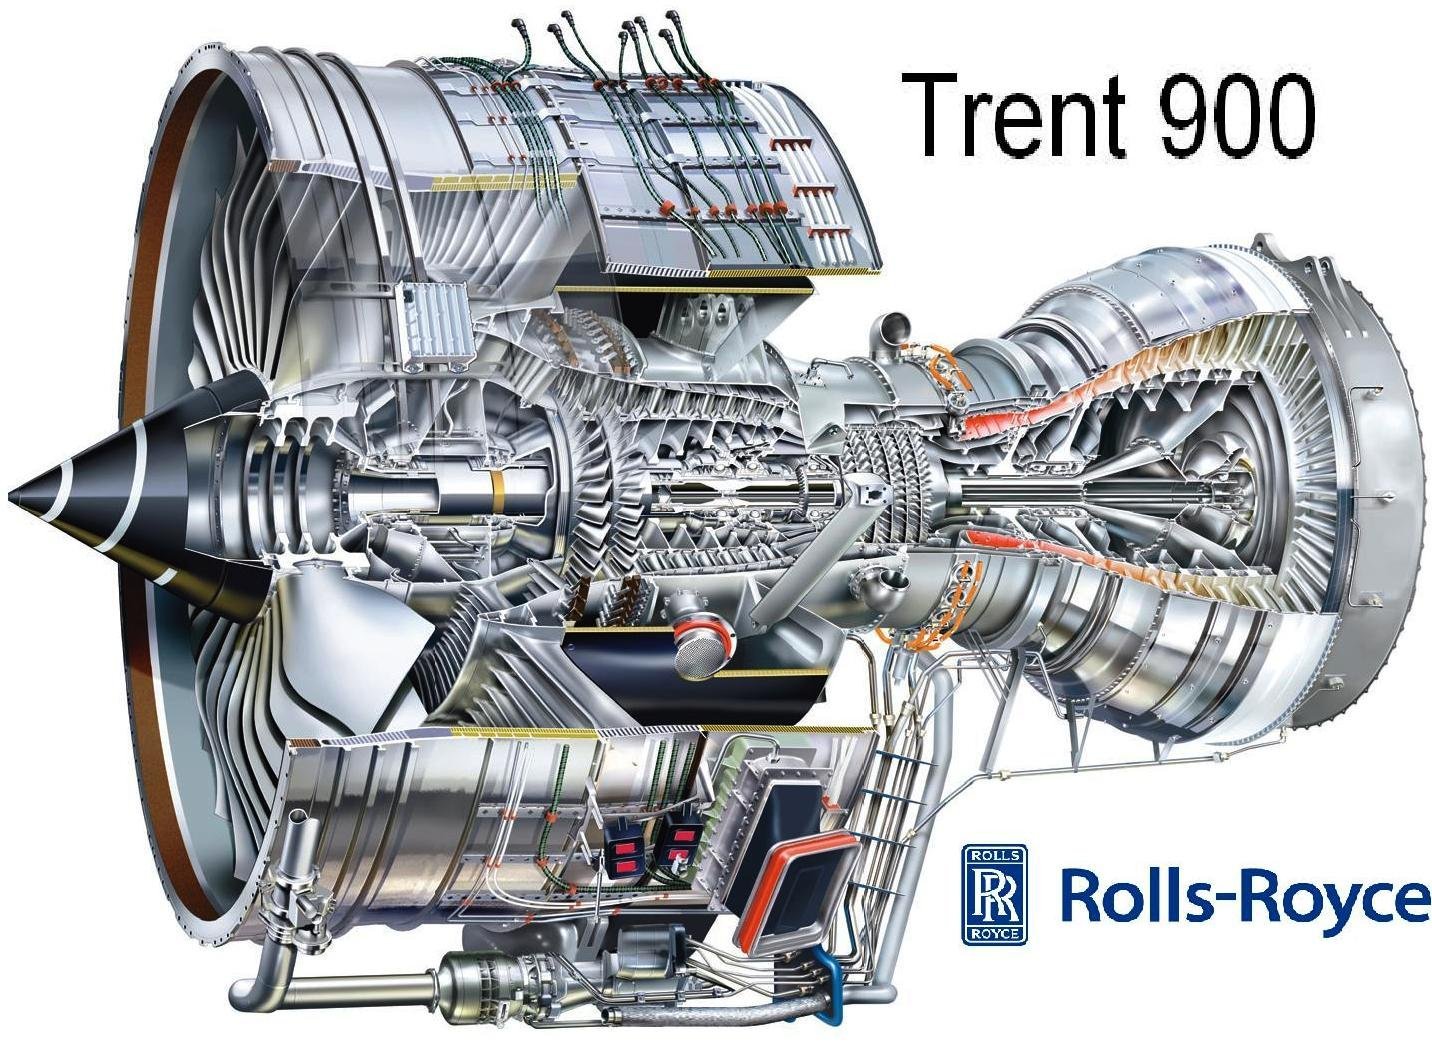 50 Airbus A380 de Emirates tendrán motores Trent 900 de Rolls-Royce | Aviacol.net El Portal de la Aviación